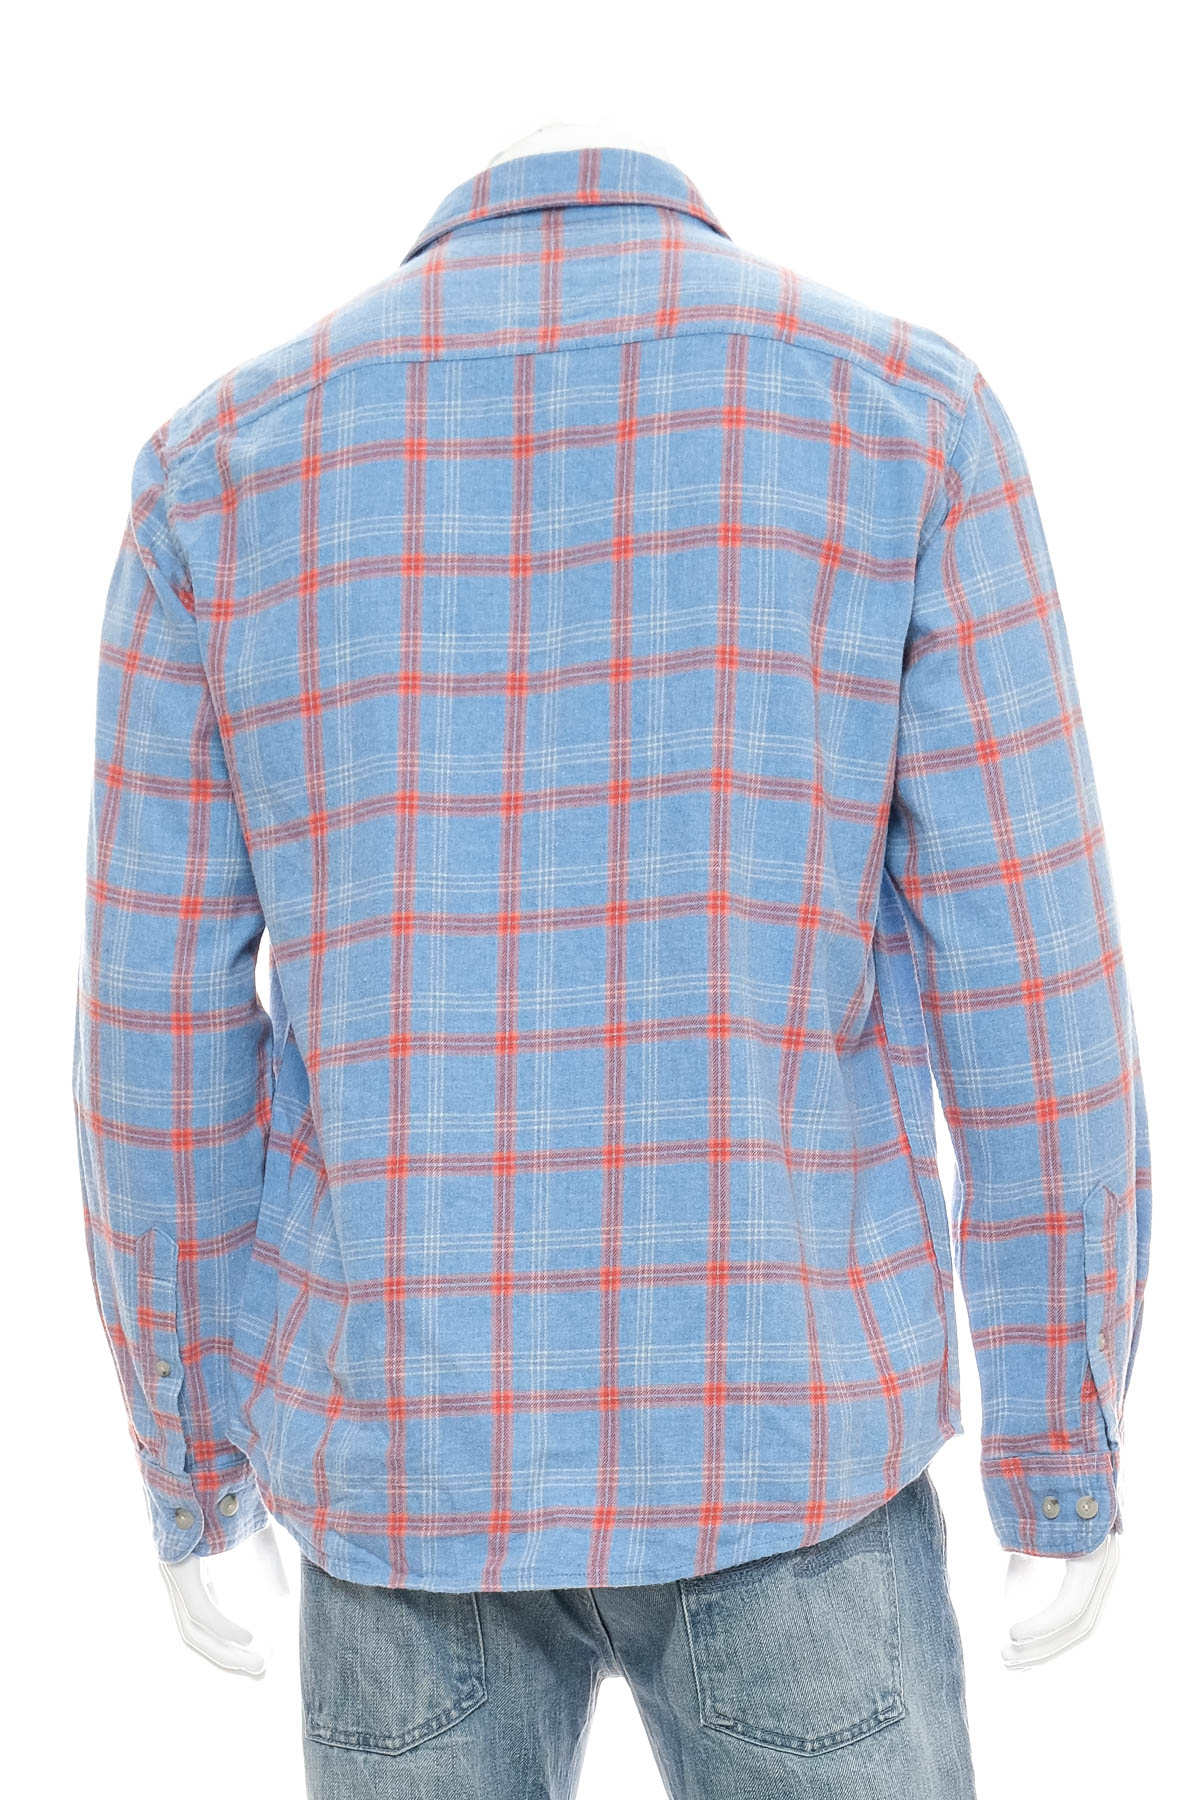 Men's shirt - Sonoma - 1